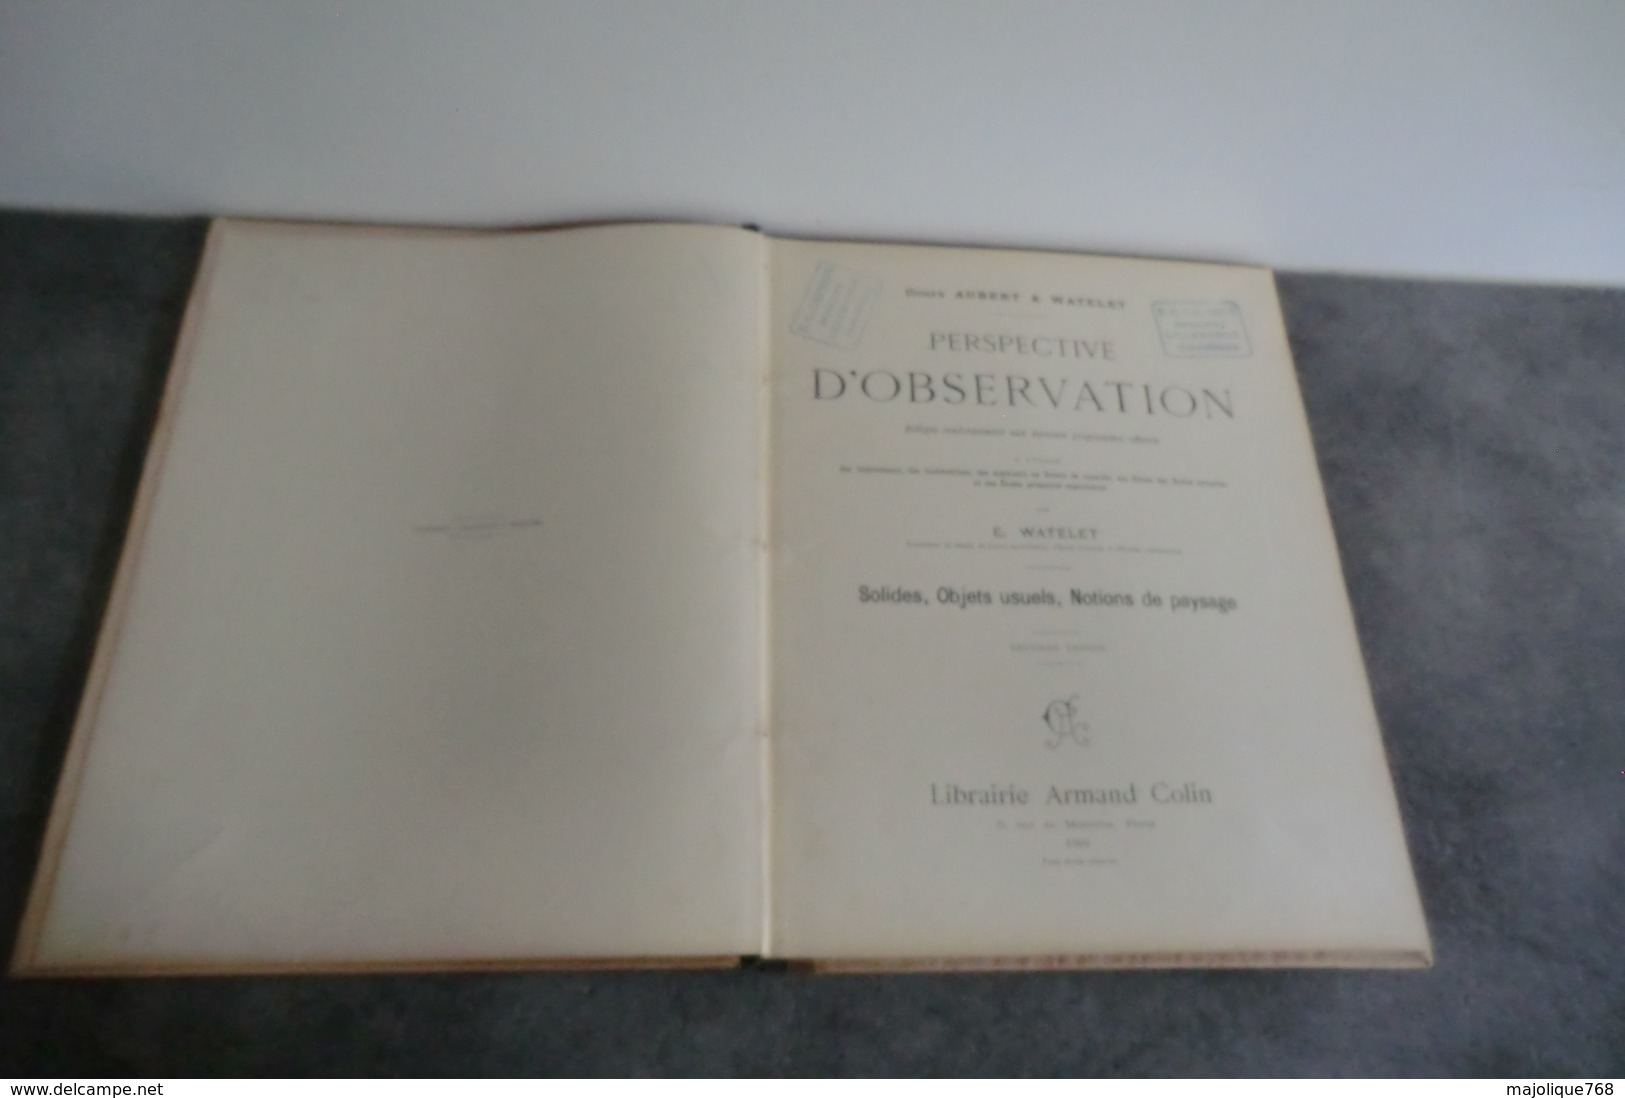 Perspective D'observation Cours Aubert & Watelet - Librairie Armand Colin Paris 1900 - - Über 18